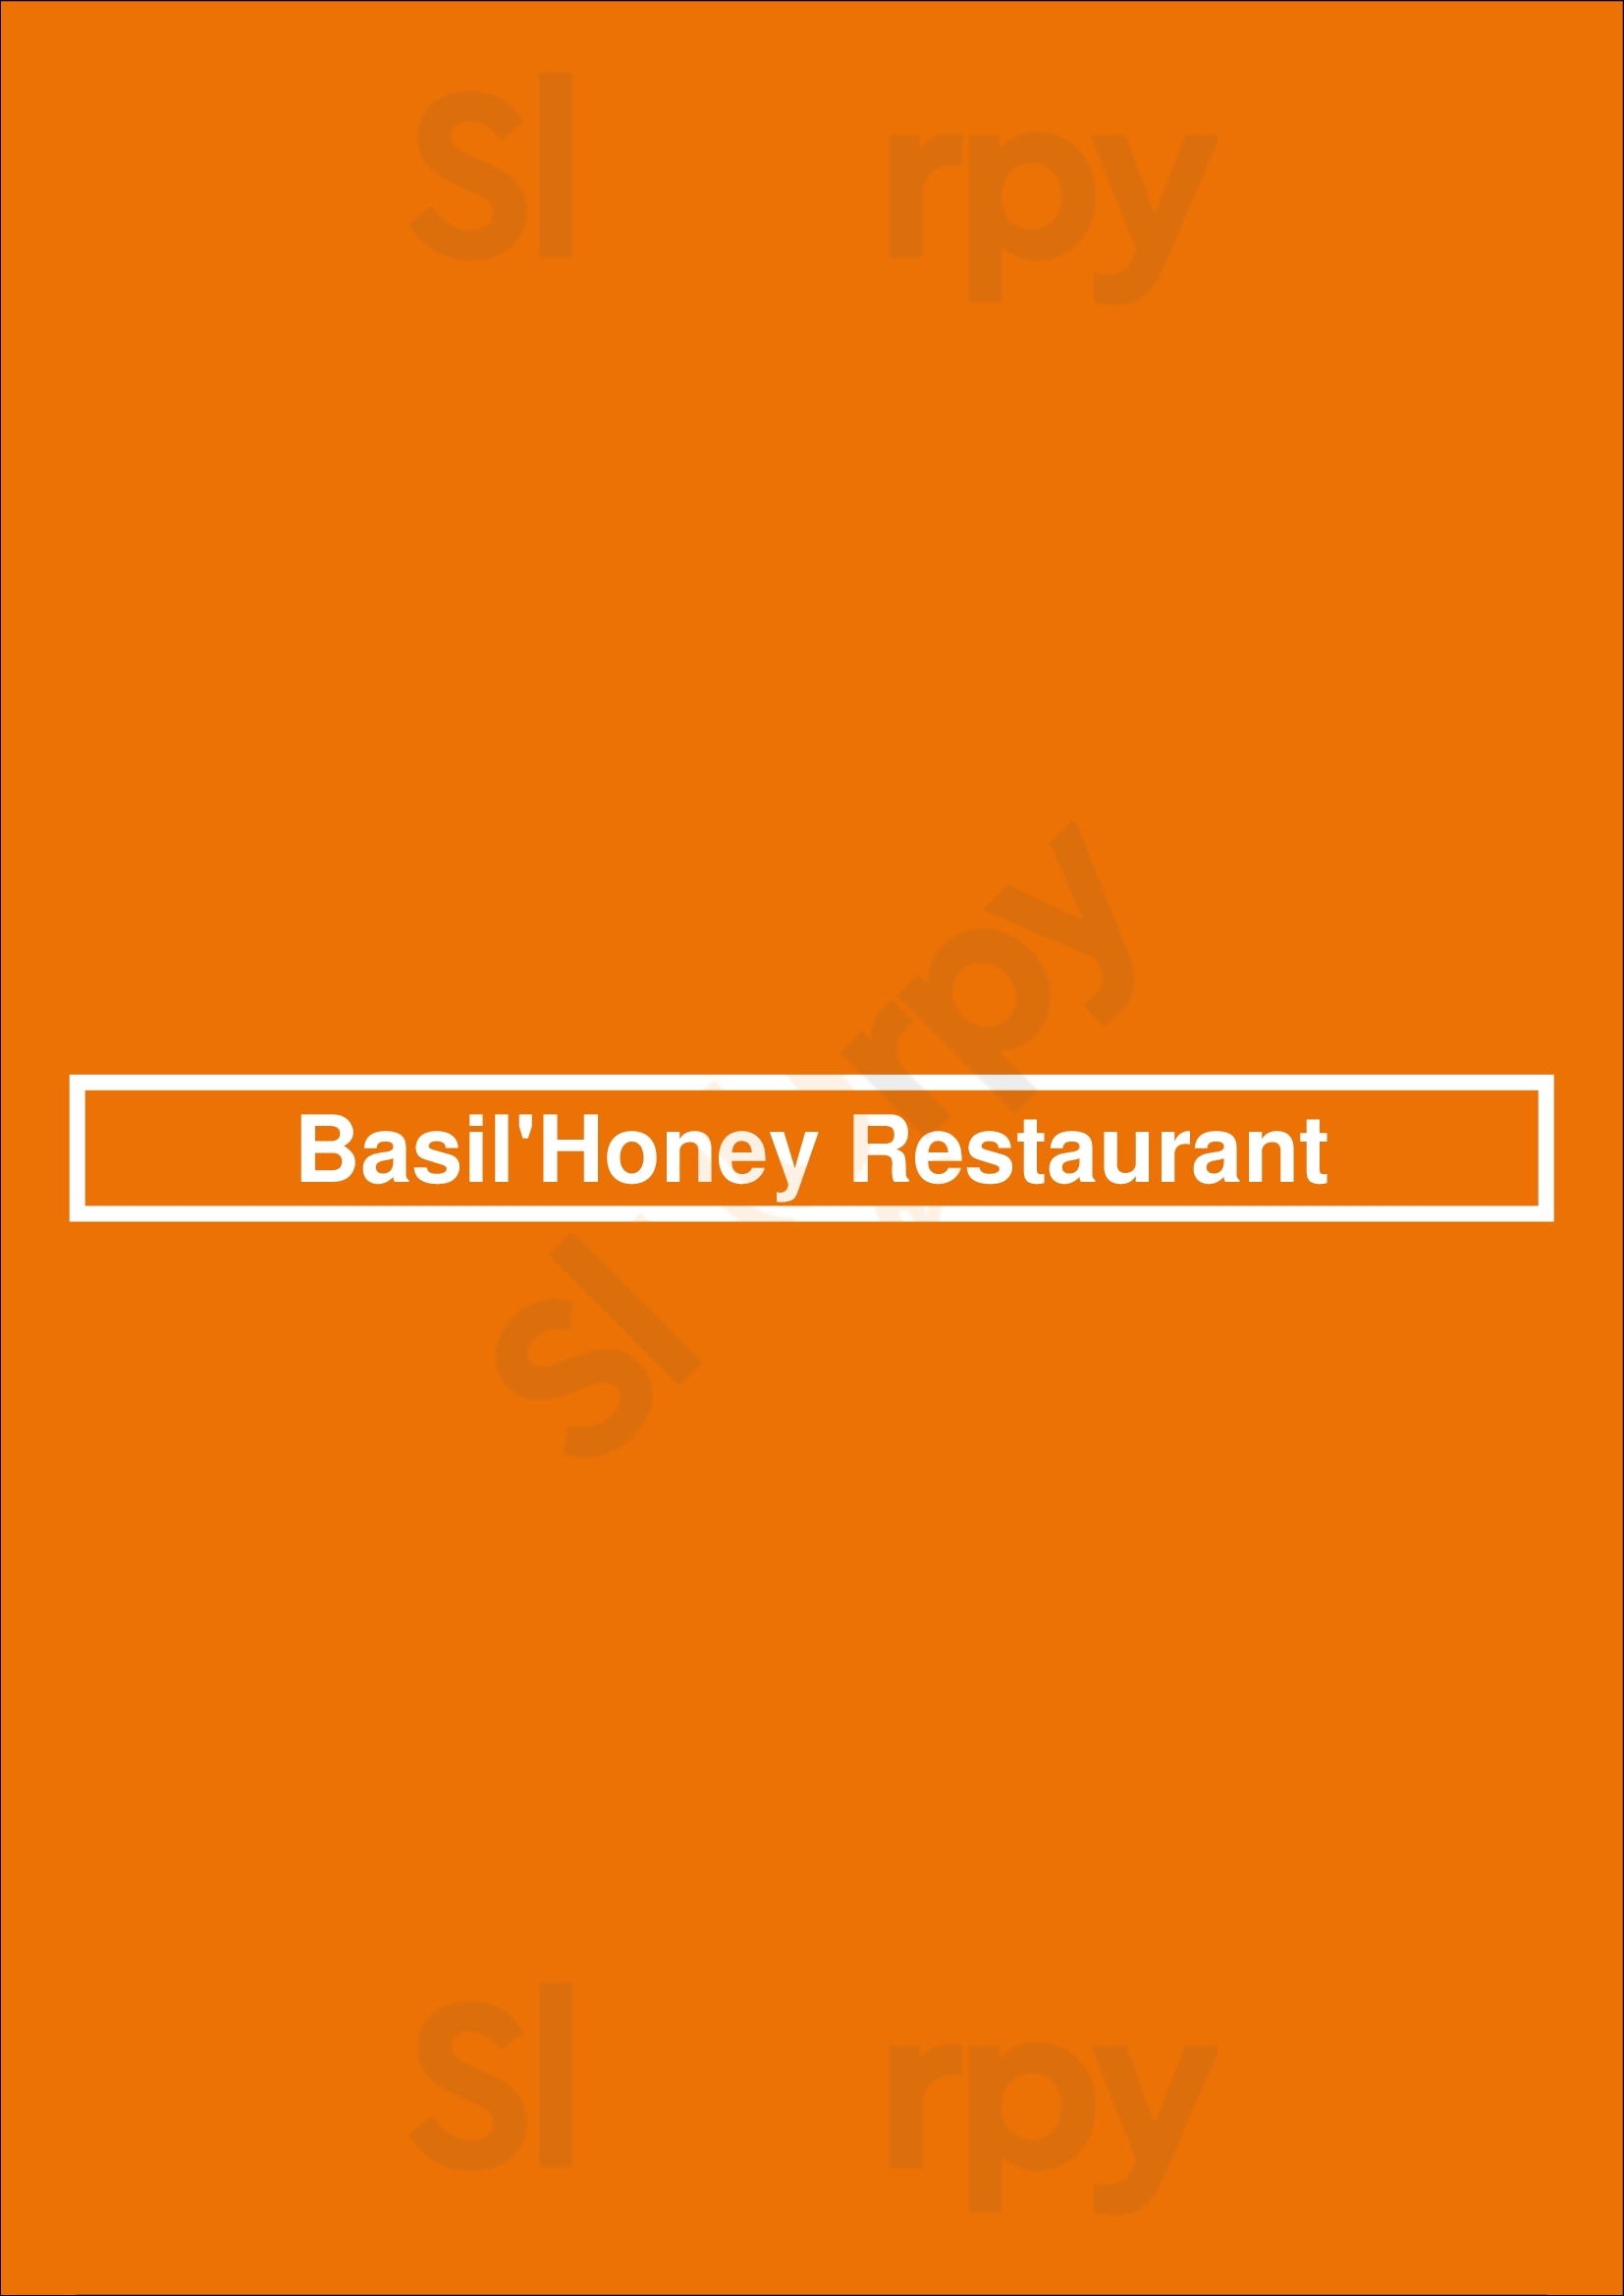 Basil'honey Restaurant Πλατανιάς Menu - 1